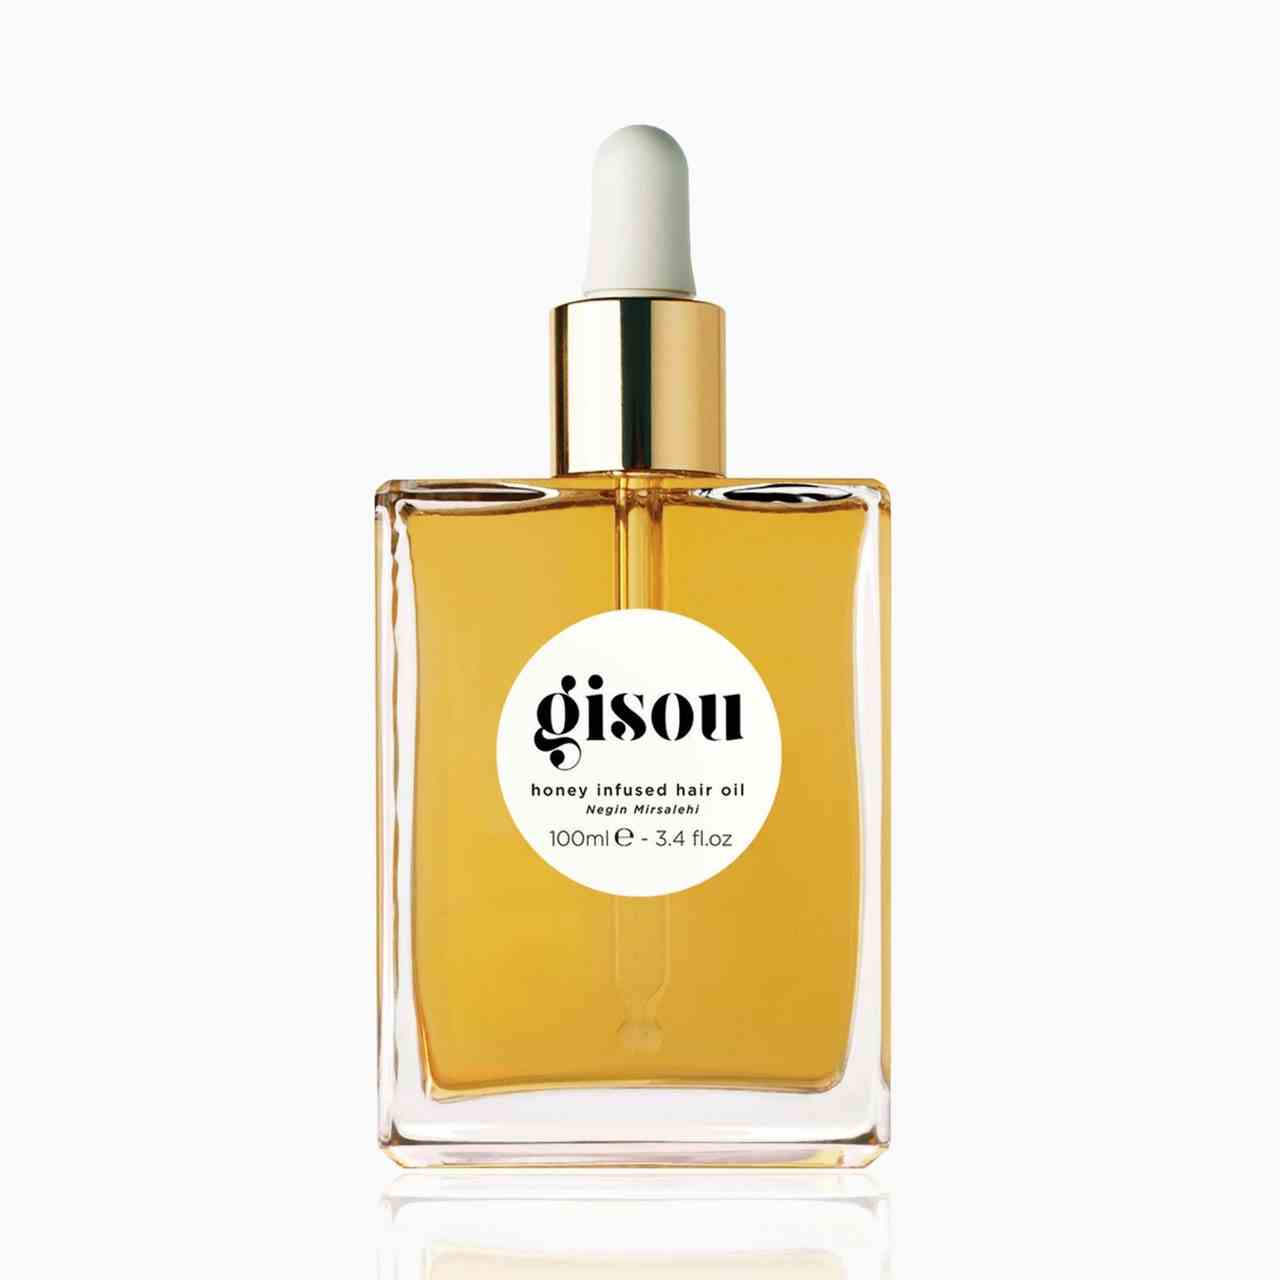 Gisou Honey Infused Hair Oil quadratische Flasche goldenes Haaröl mit goldener und weißer Tropfkappe auf weißem Hintergrund